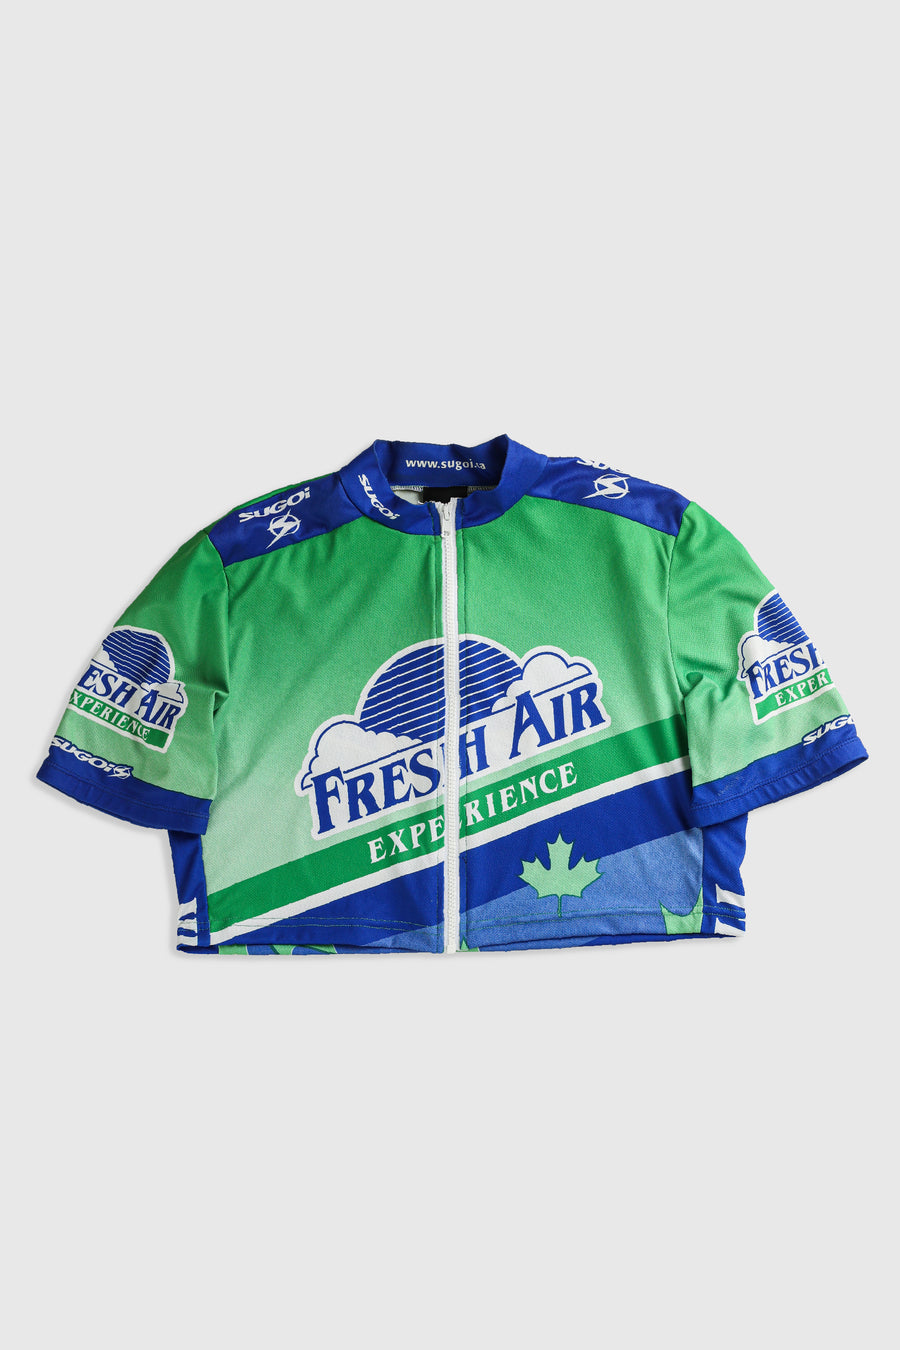 Rework Crop Cycling Jersey - XL